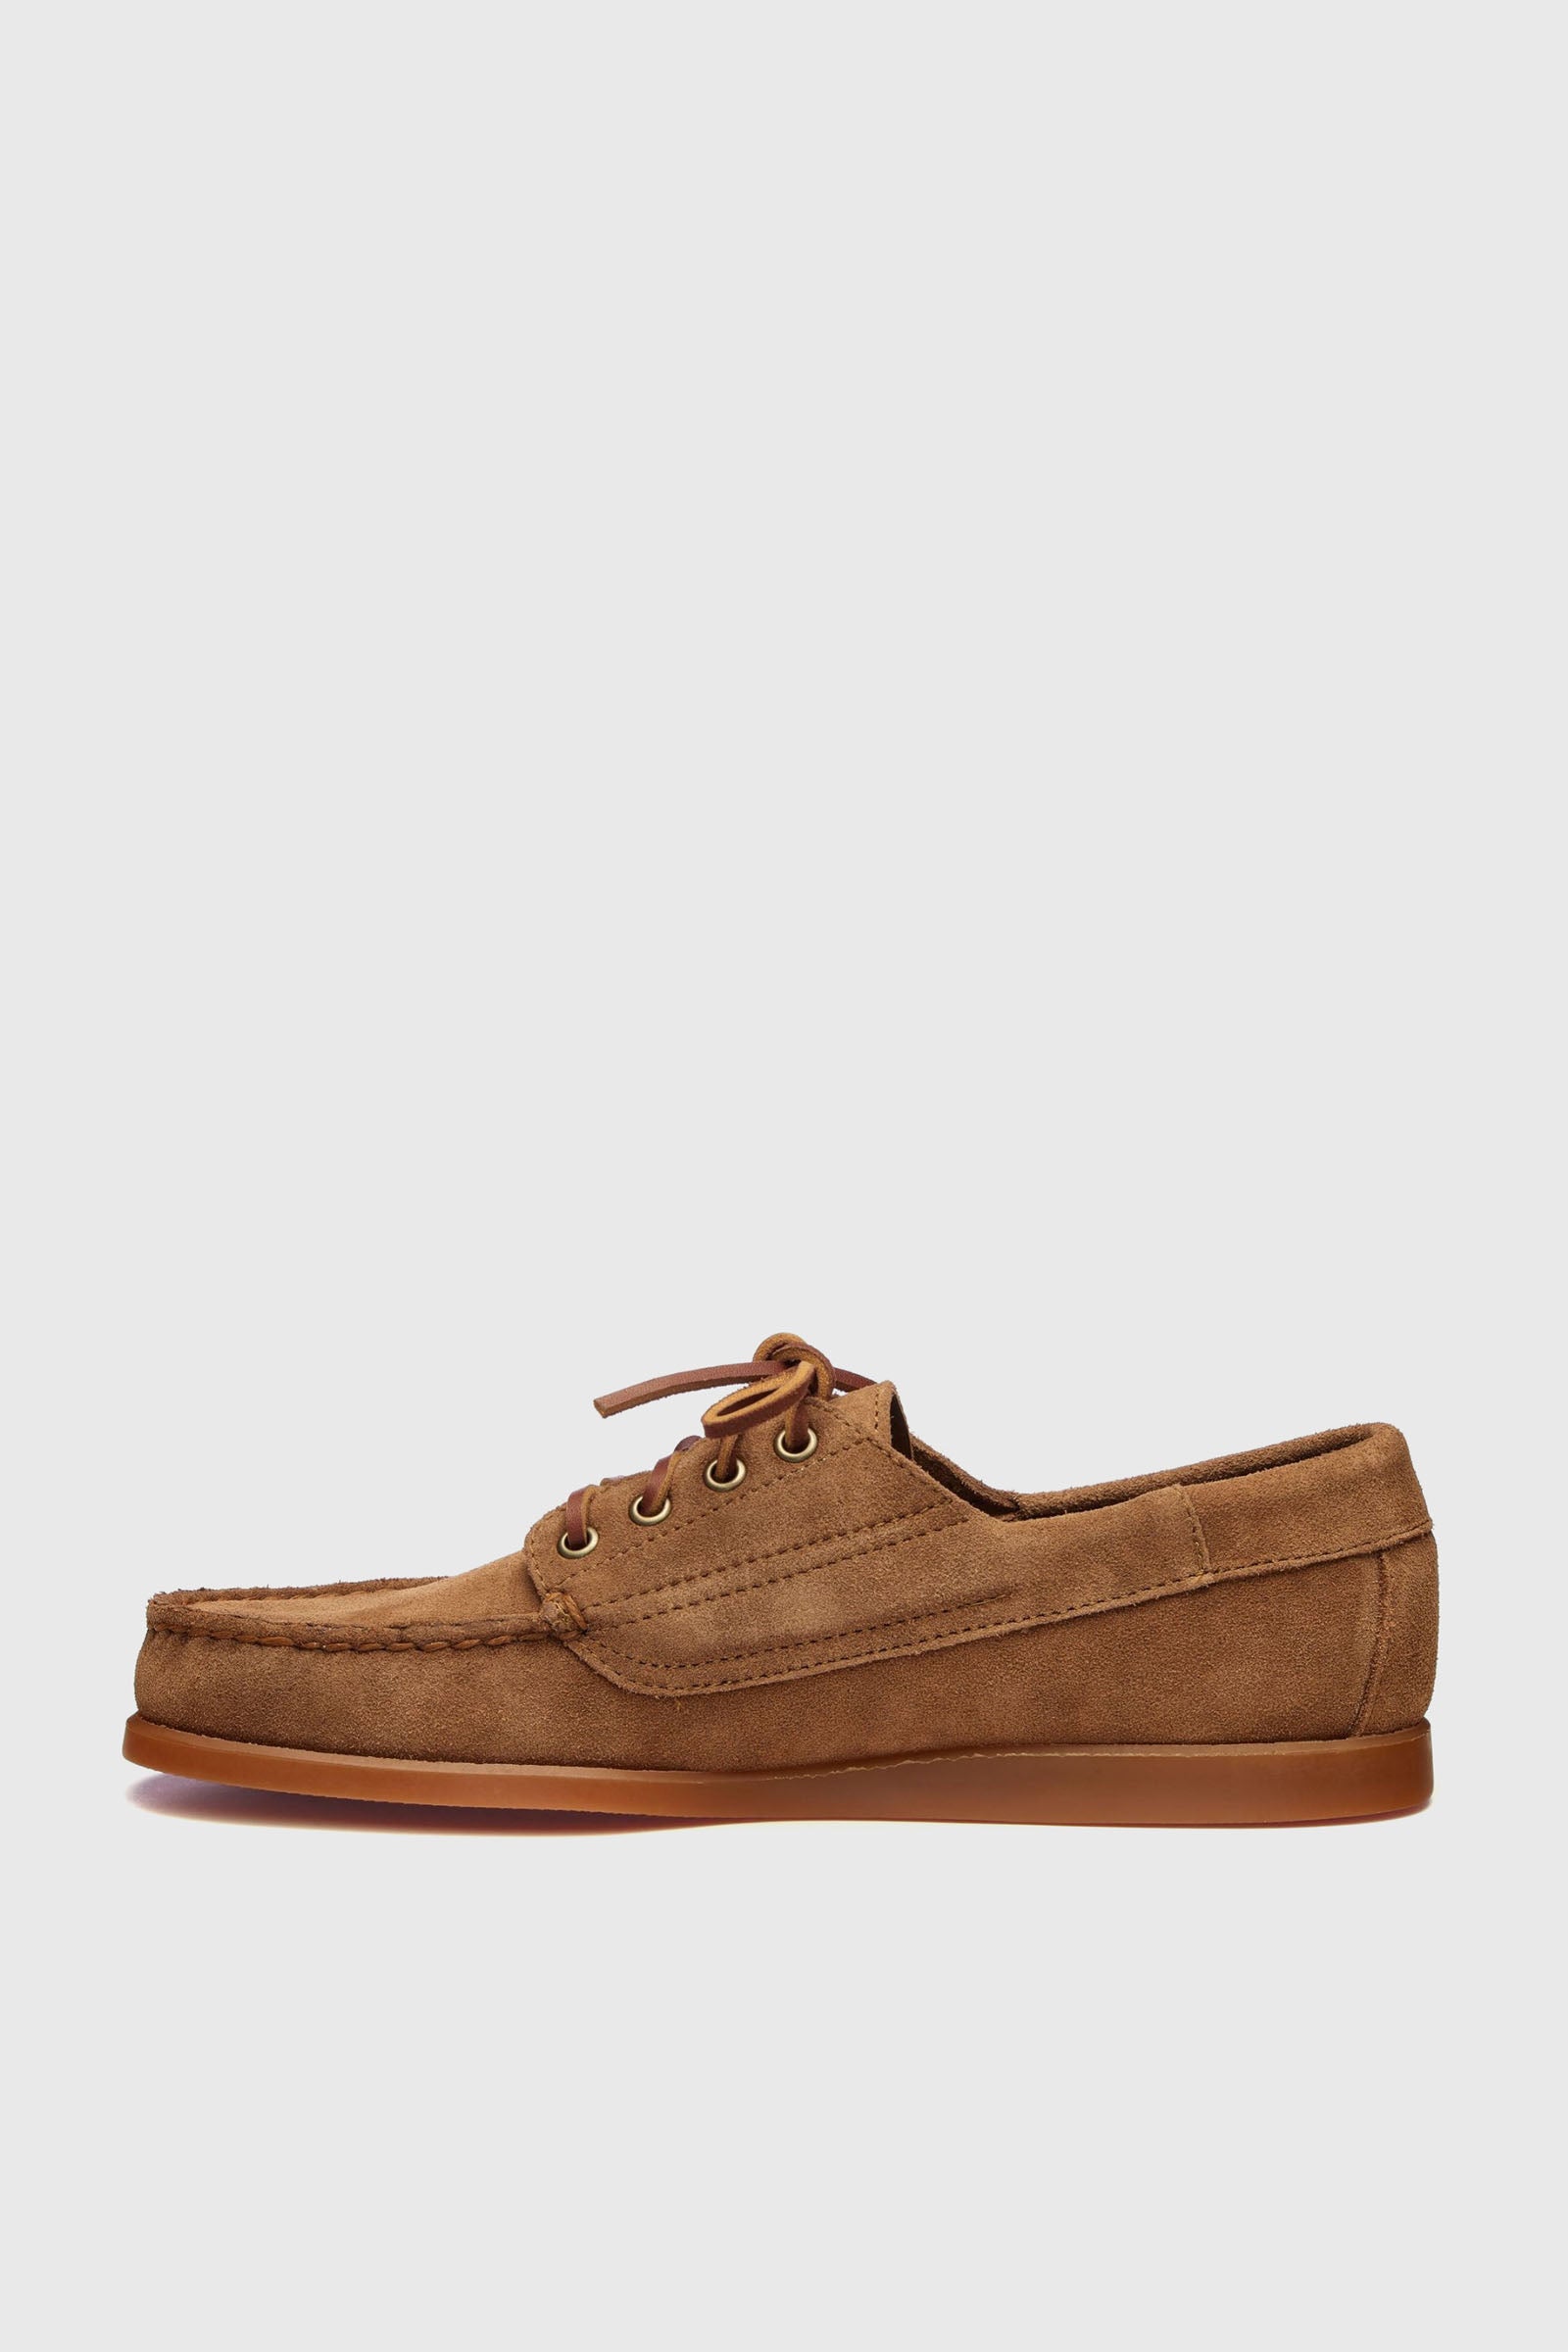 Sebago Loafer Askook Brown Leather - 5